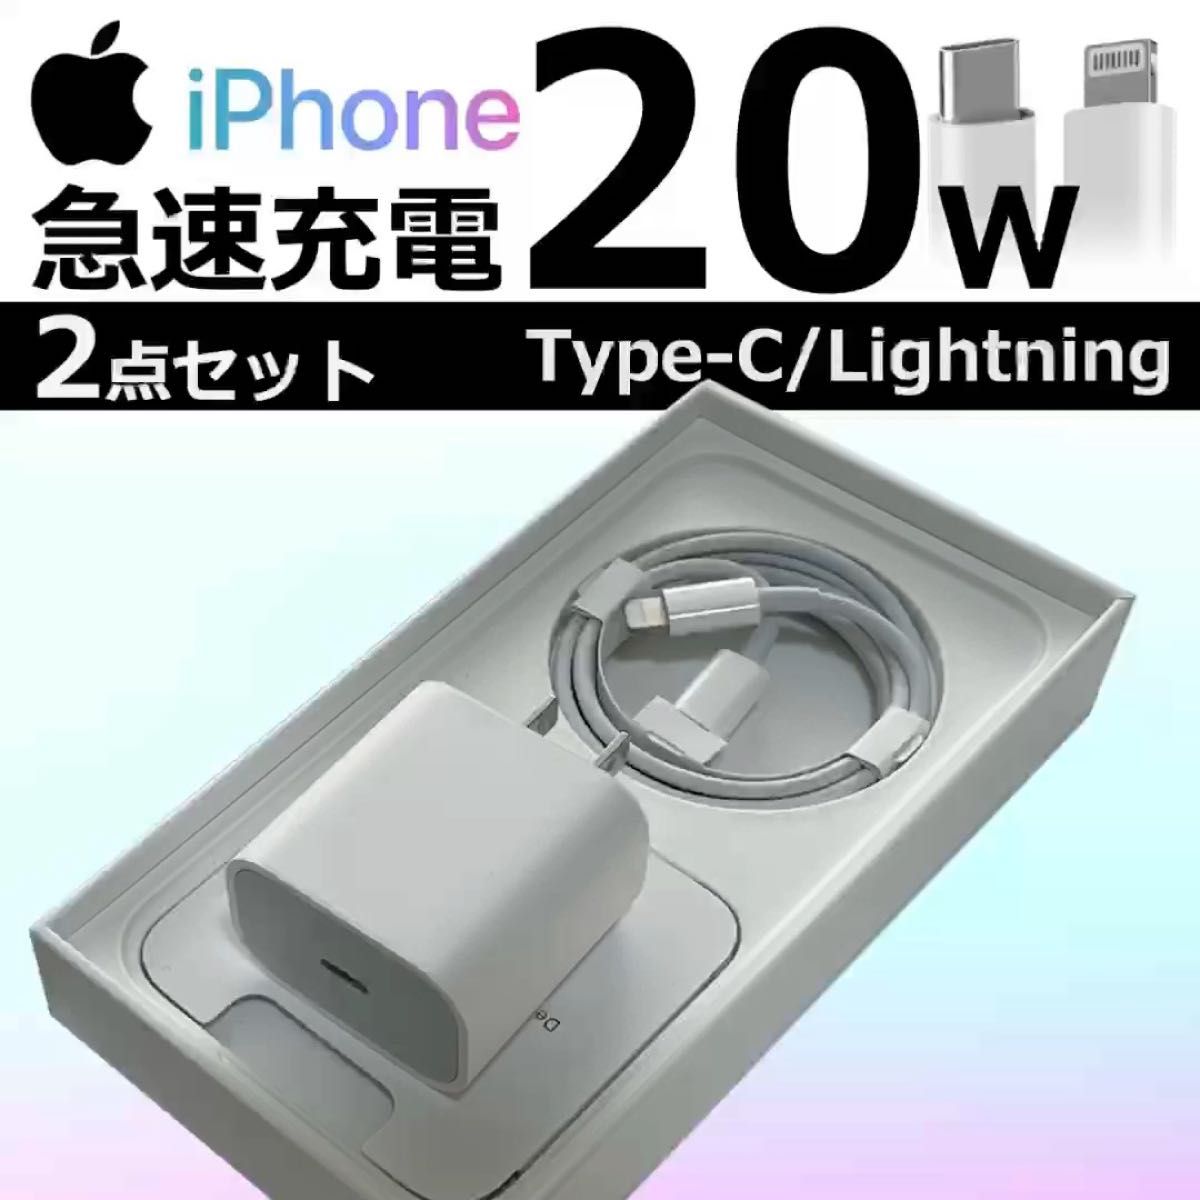 iPhone コンセント アダプタ 電源 充電器 充電ケーブル コード lightning cable ライトニングケーブル